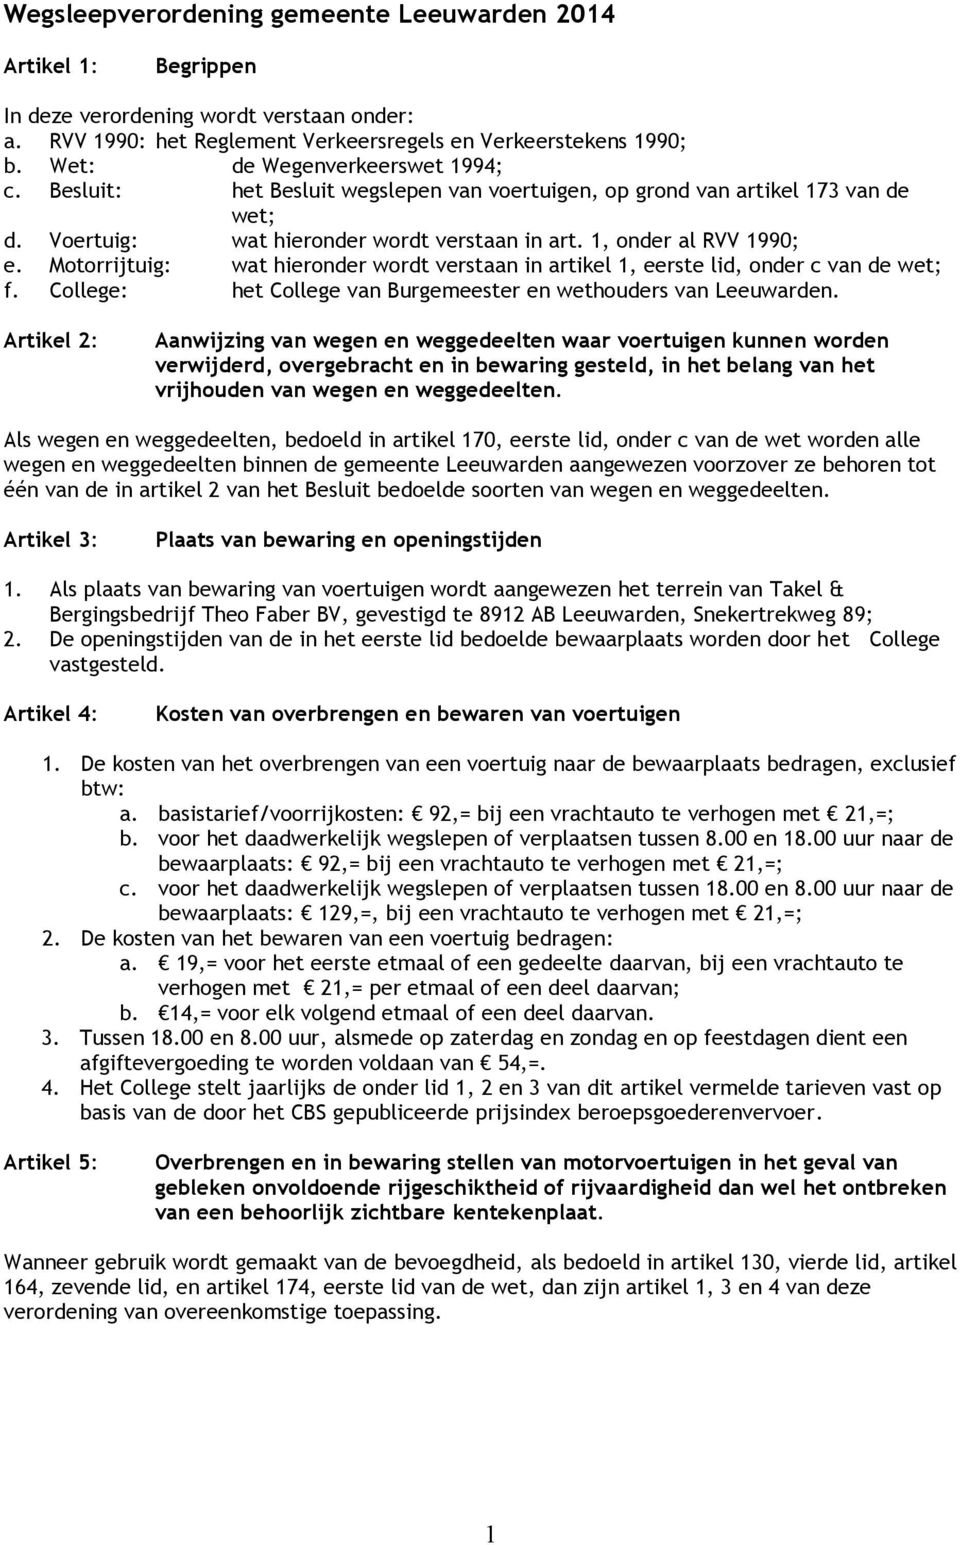 Motorrijtuig: wat hieronder wordt verstaan in artikel 1, eerste lid, onder c van de wet; f. College: het College van Burgemeester en wethouders van Leeuwarden.